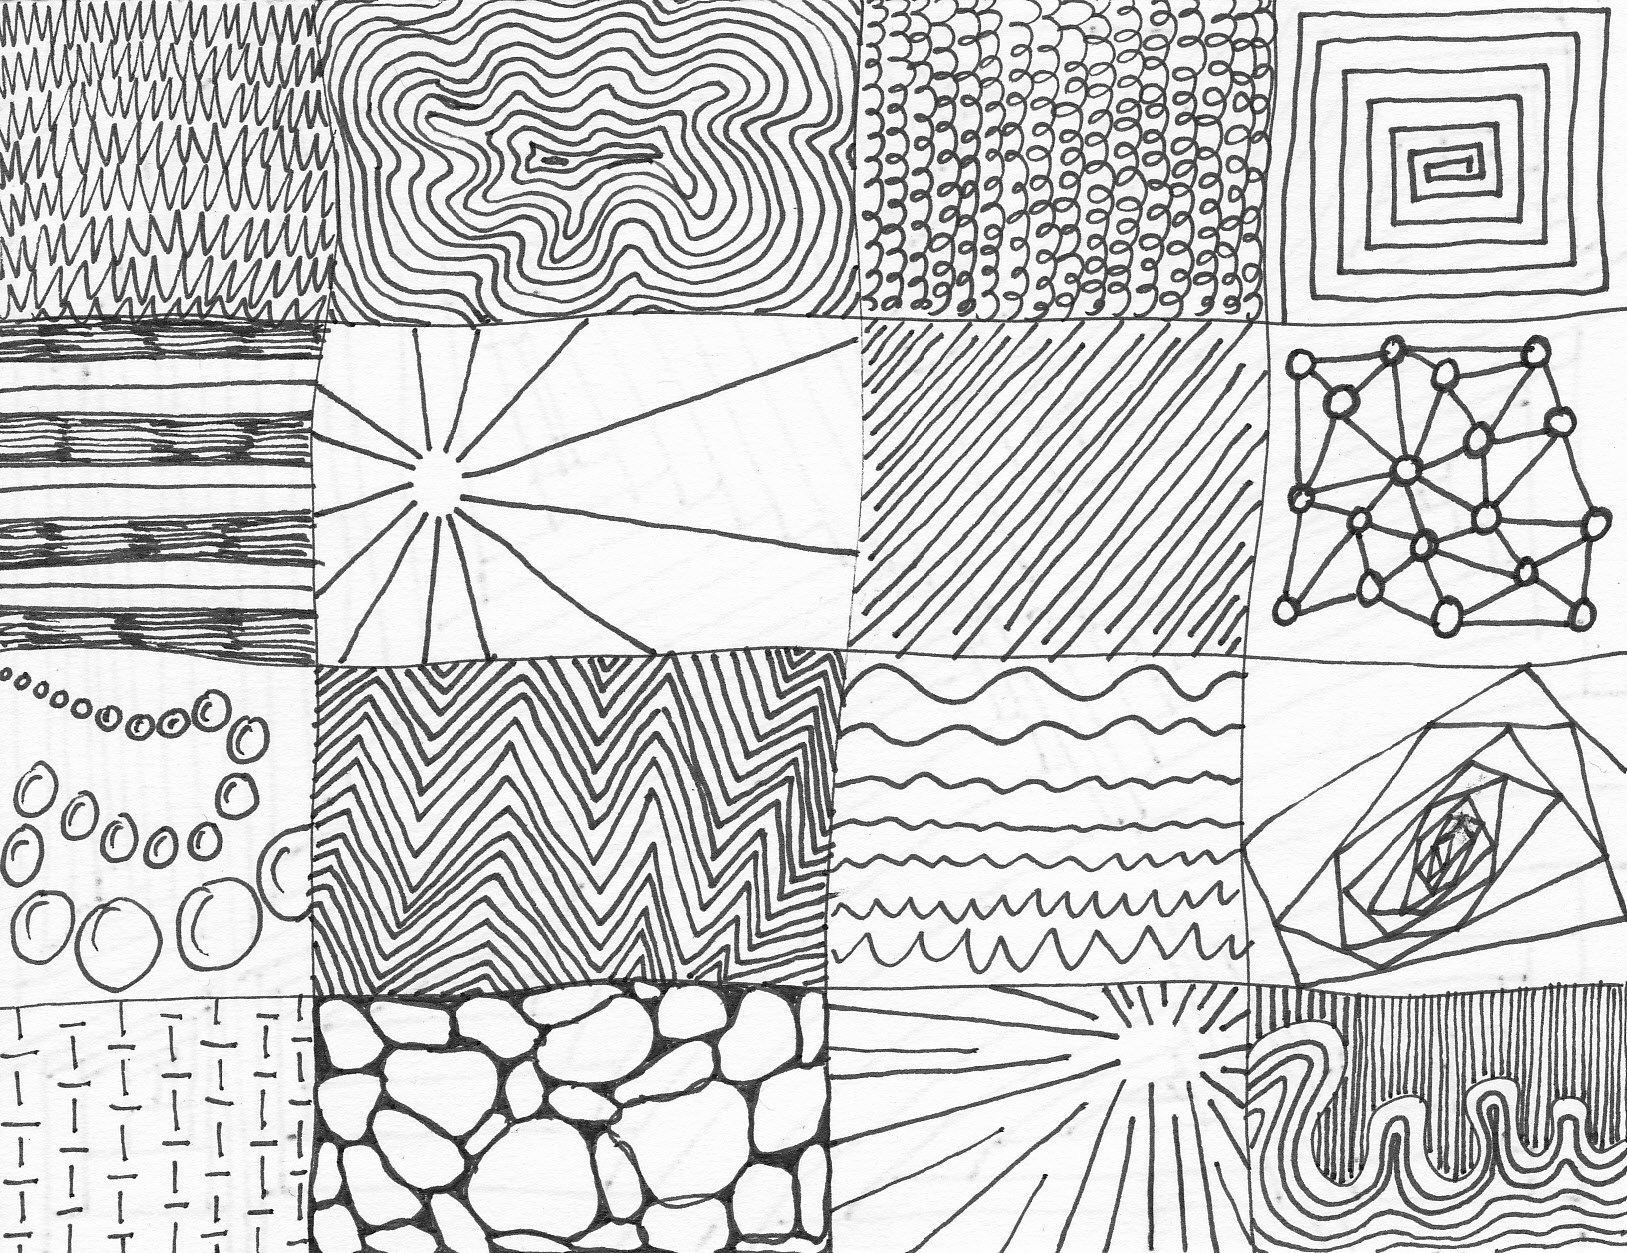 26/1: Line drawings | the sketchbook concern